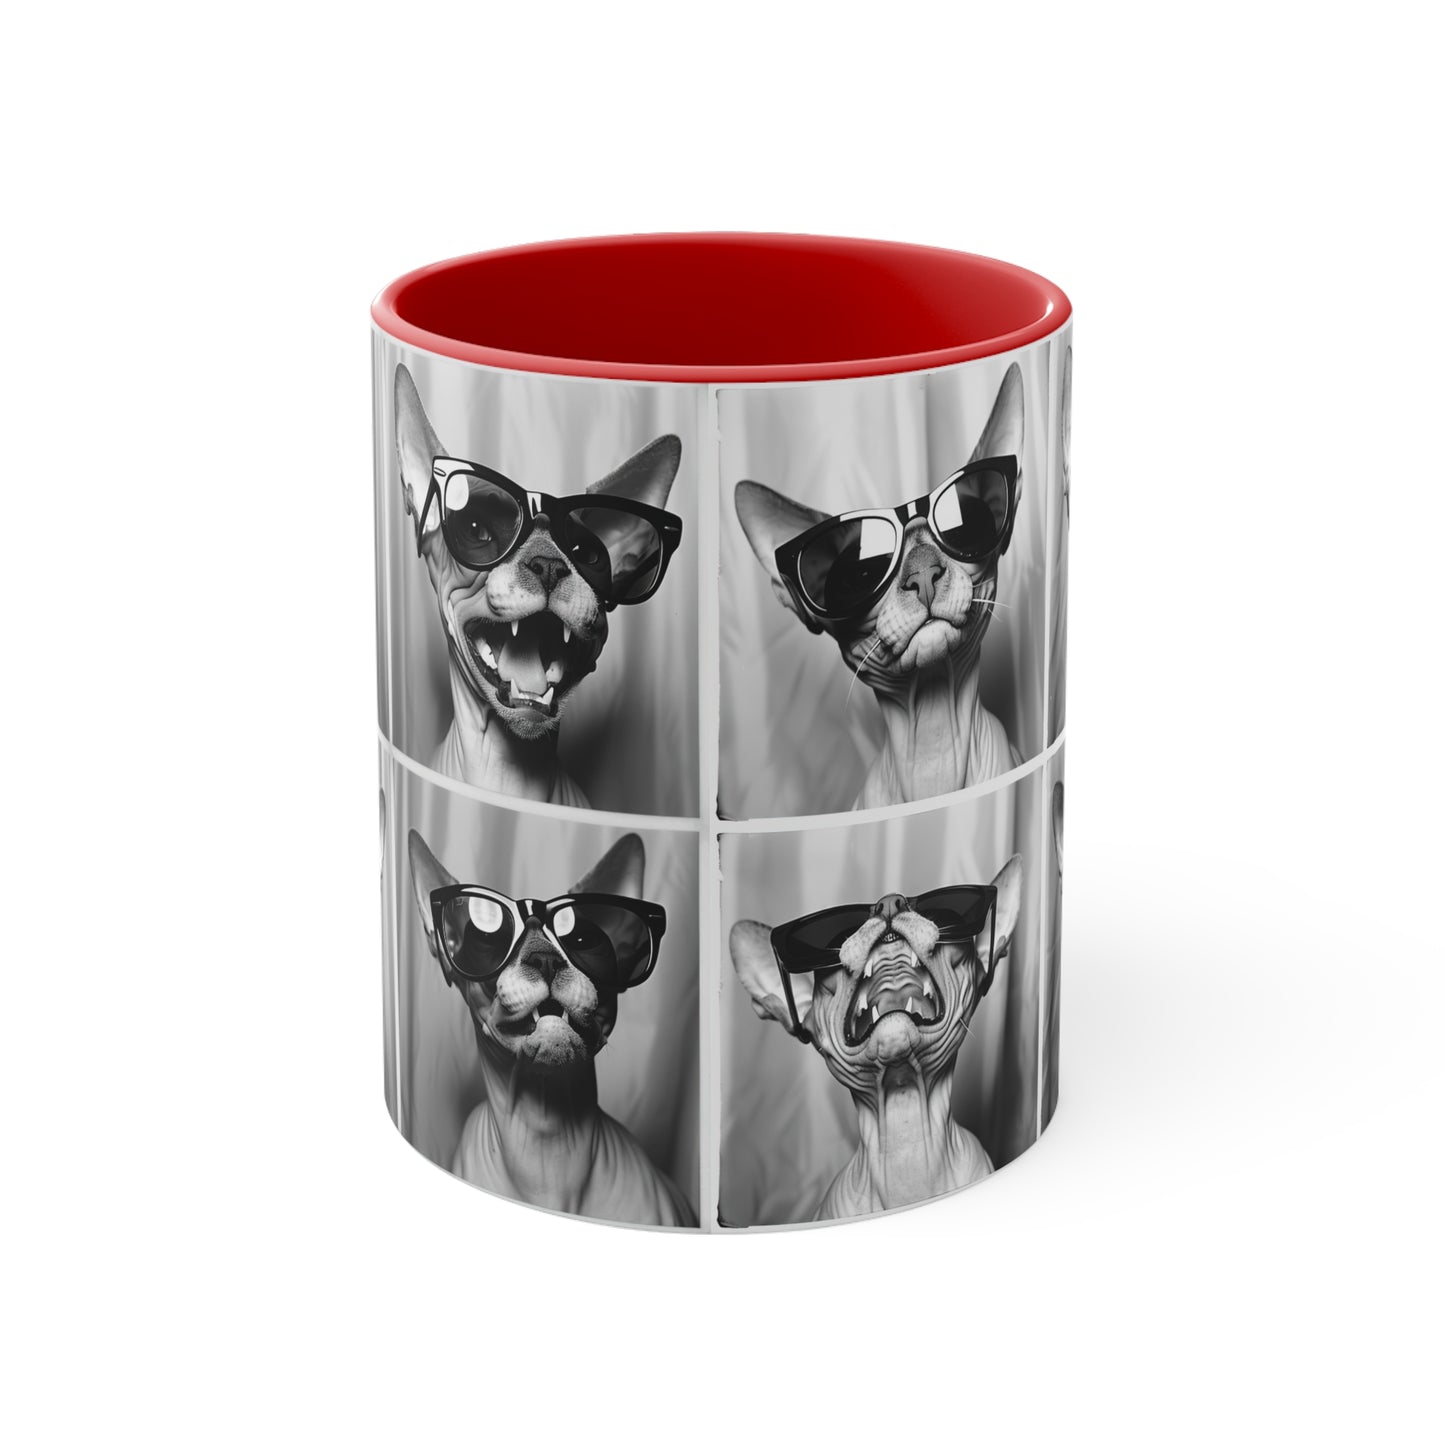 Sphynx Cat Accent Coffee Mug, 11oz